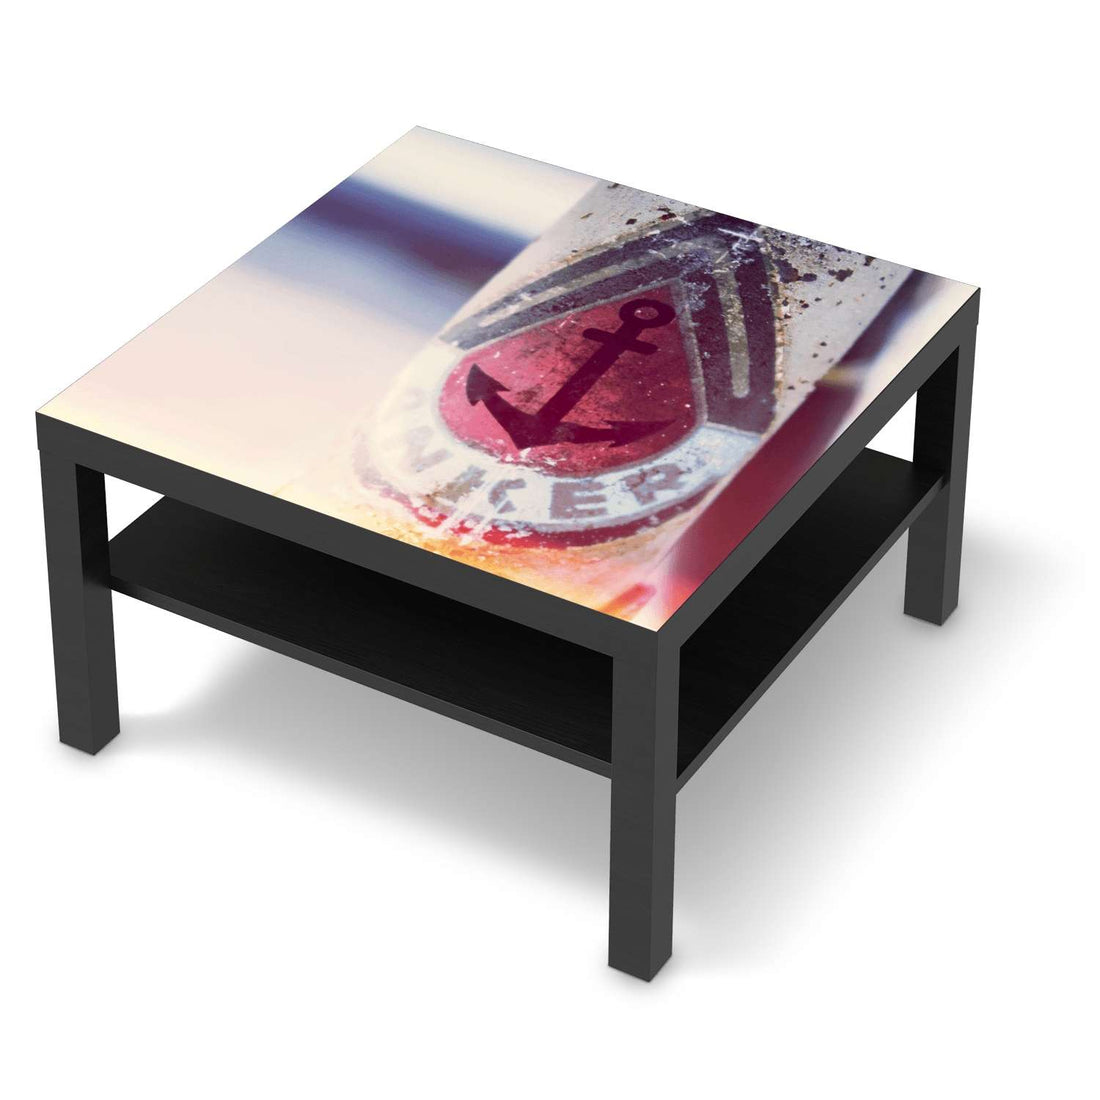 Selbstklebende Folie Anker 2 - IKEA Lack Tisch 78x78 cm - schwarz